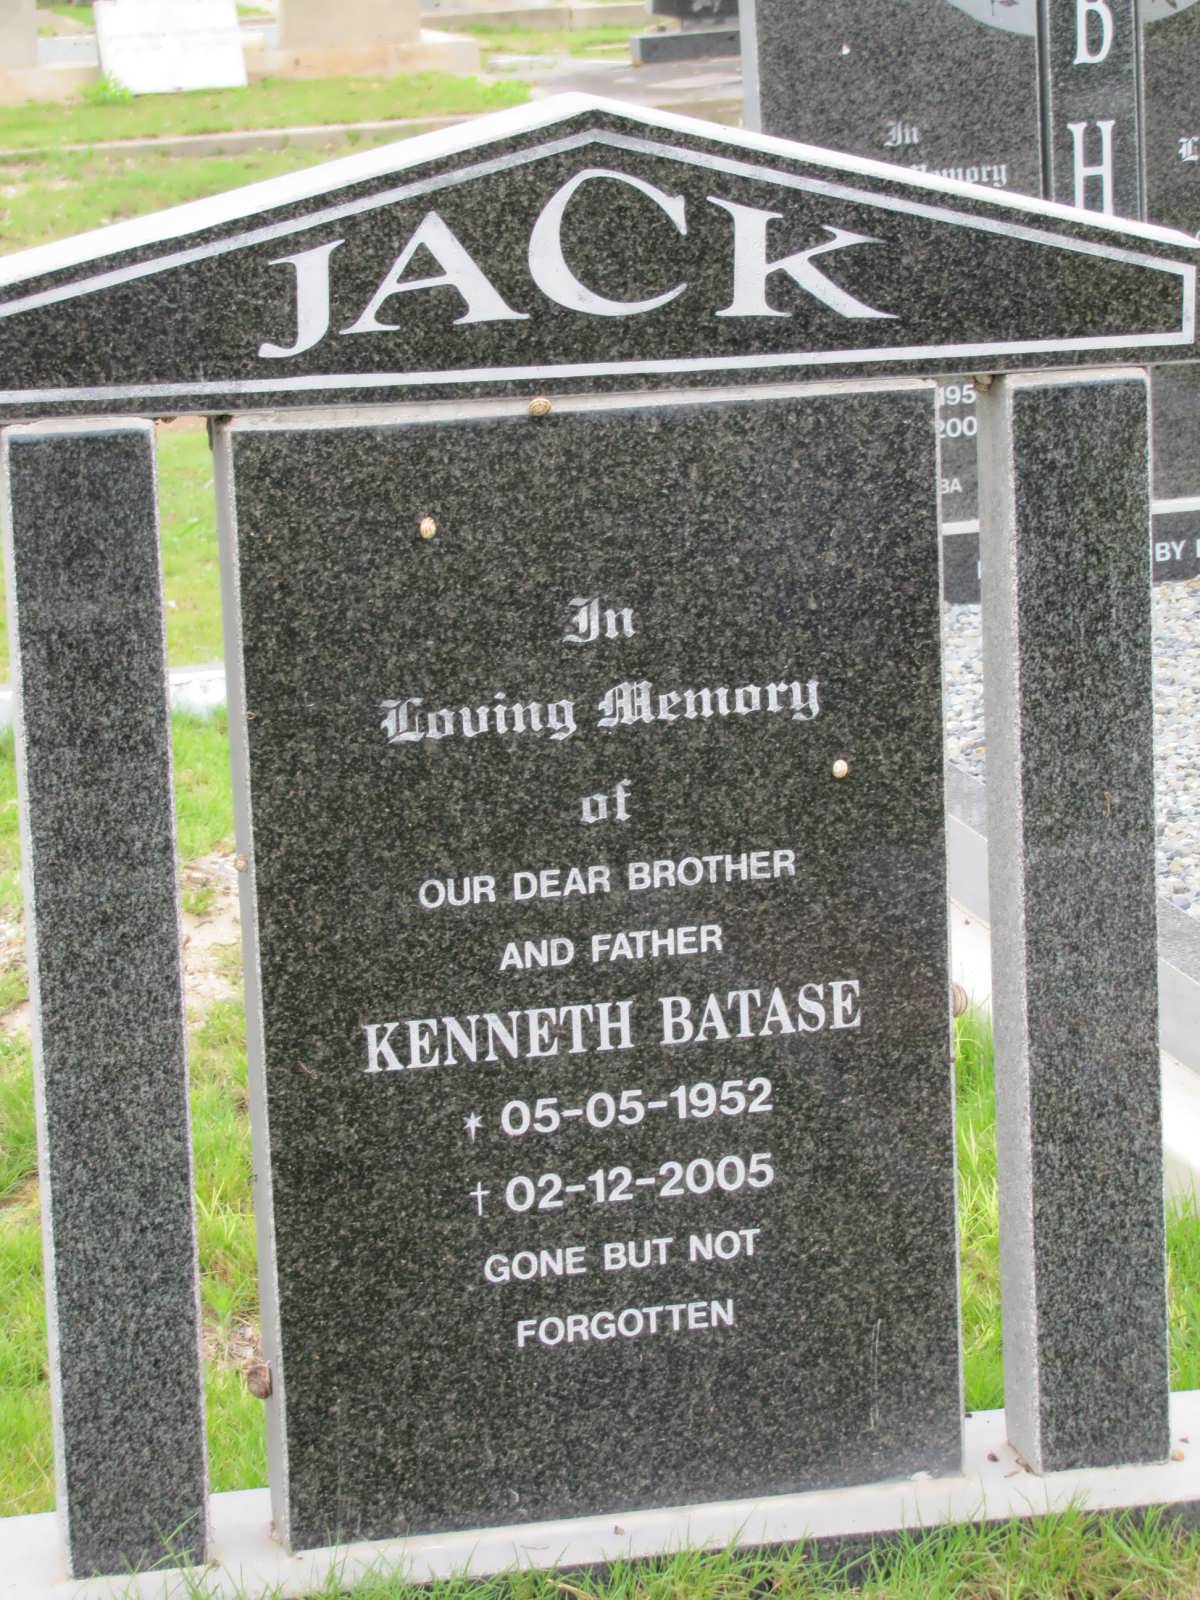 JACK Kenneth Batase 1952-2005